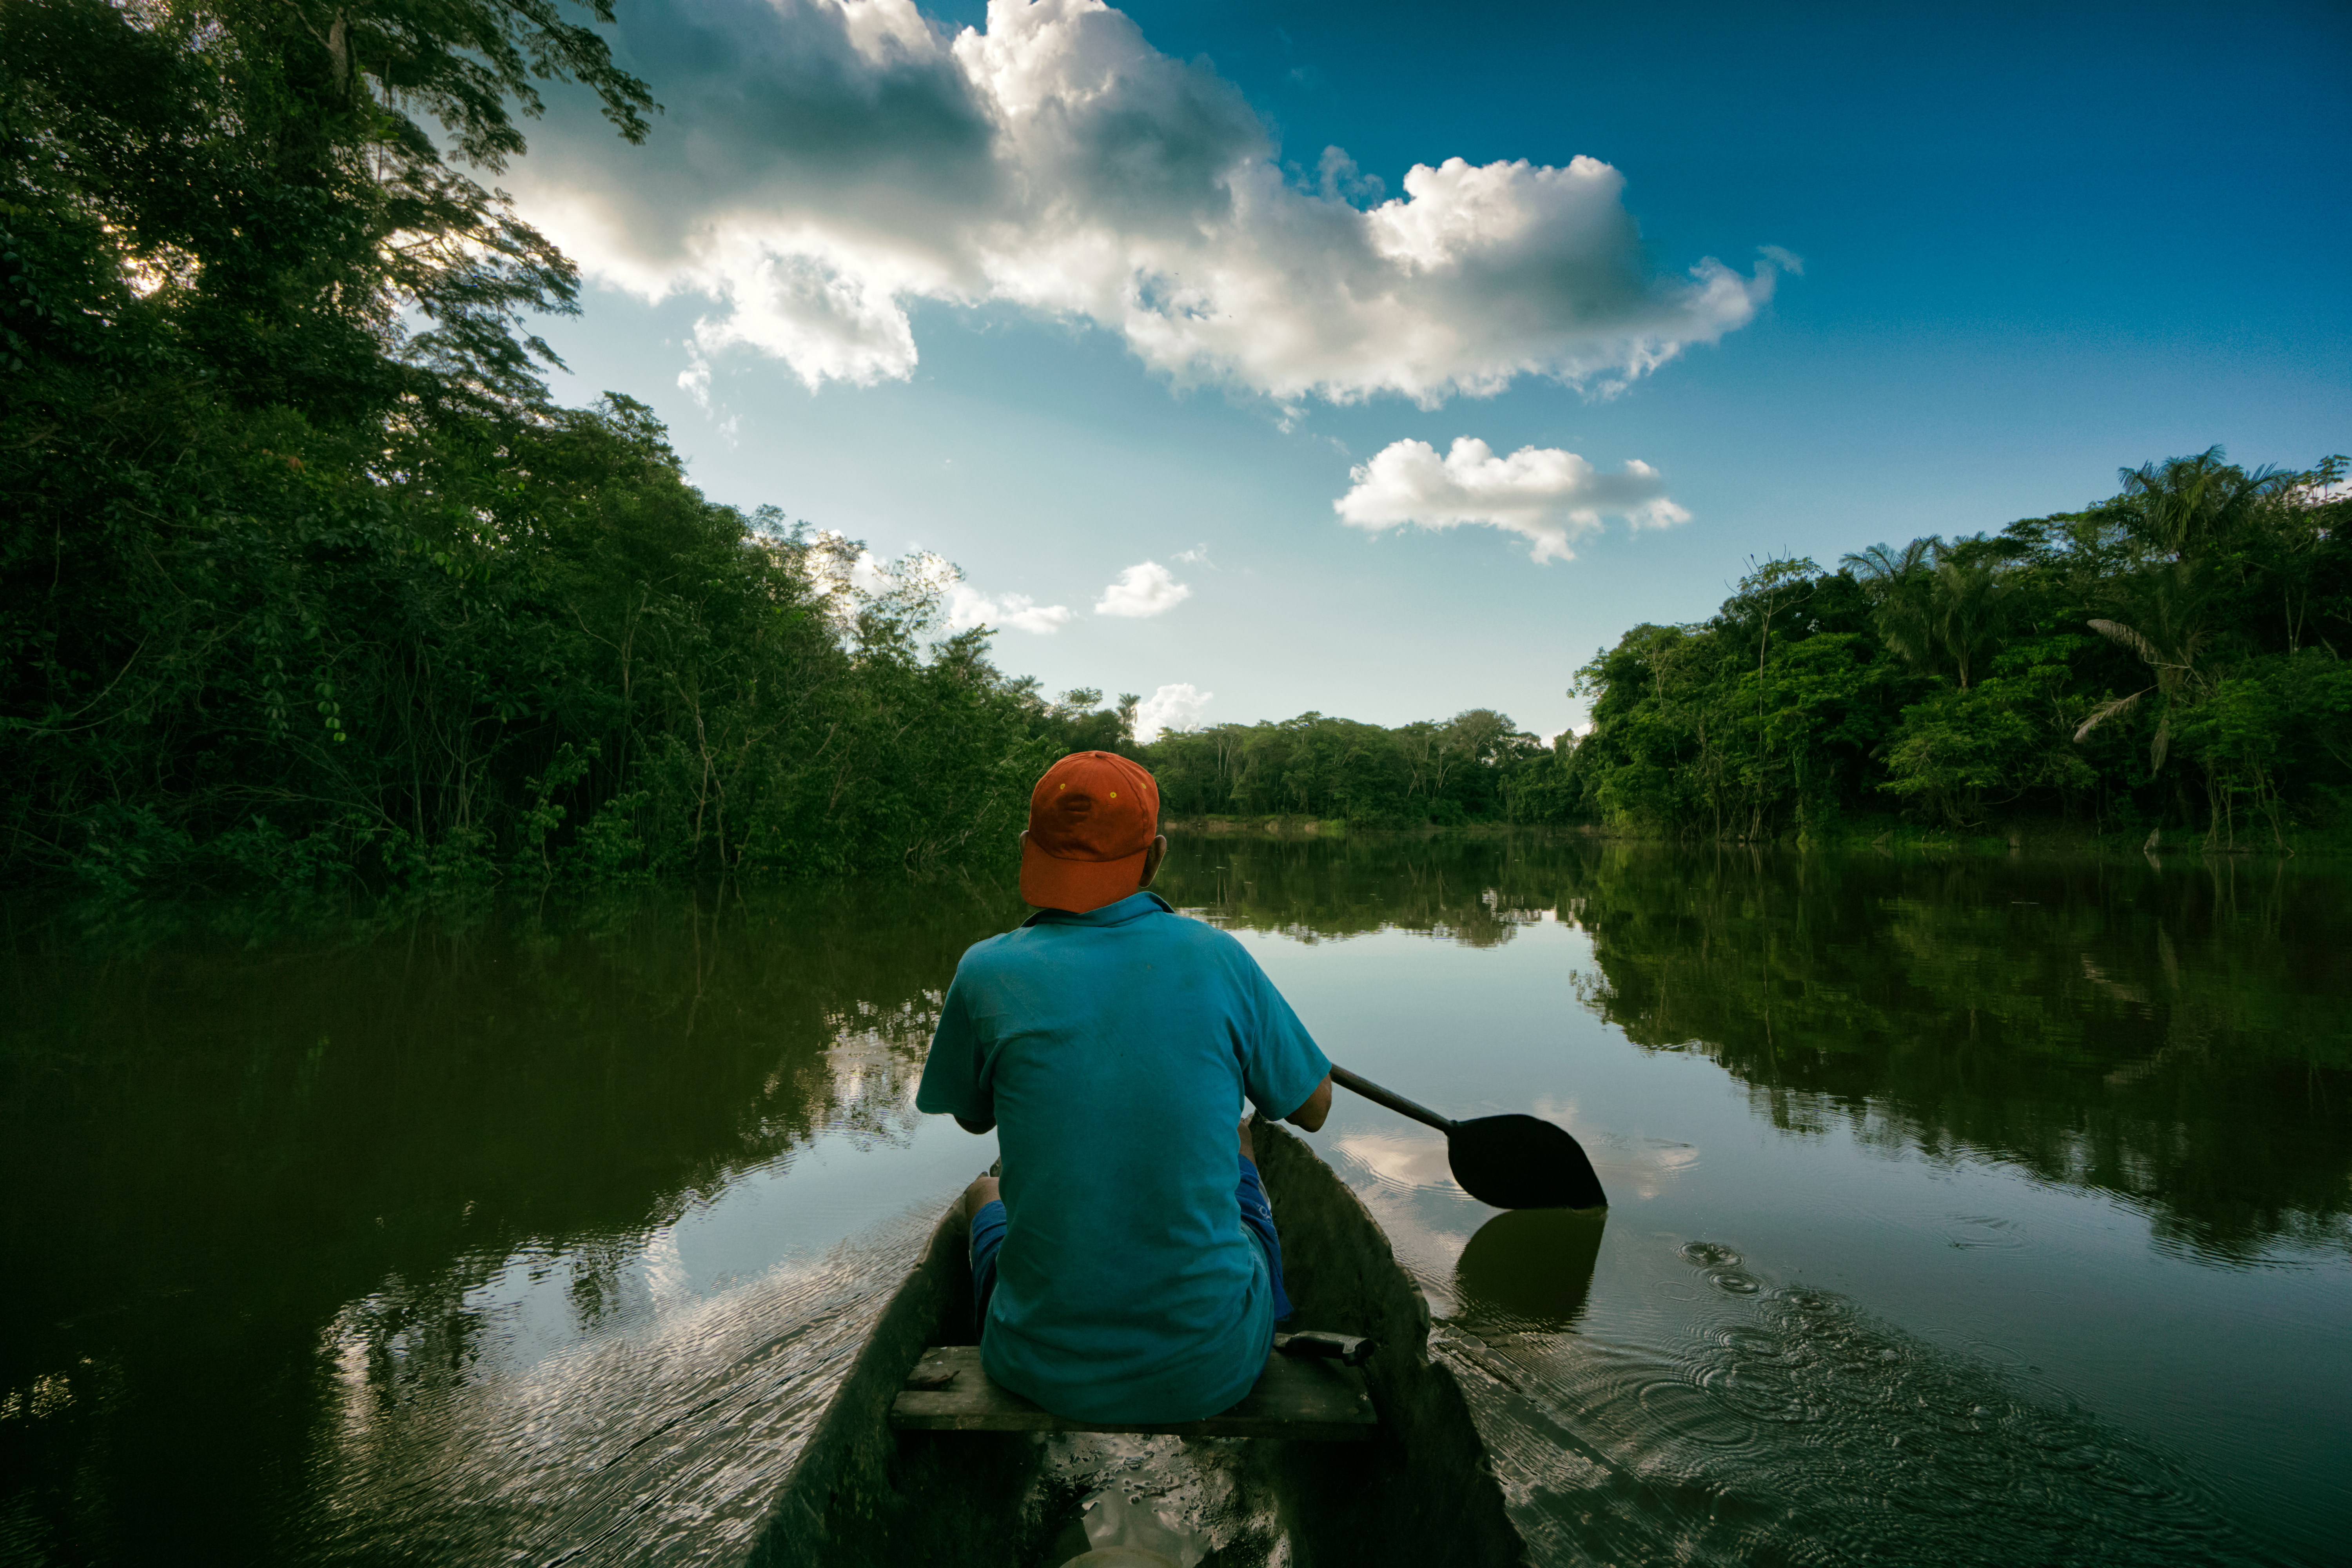 Pescador en una canoa pequeña en medio del Rio Maniti en el Amazonas